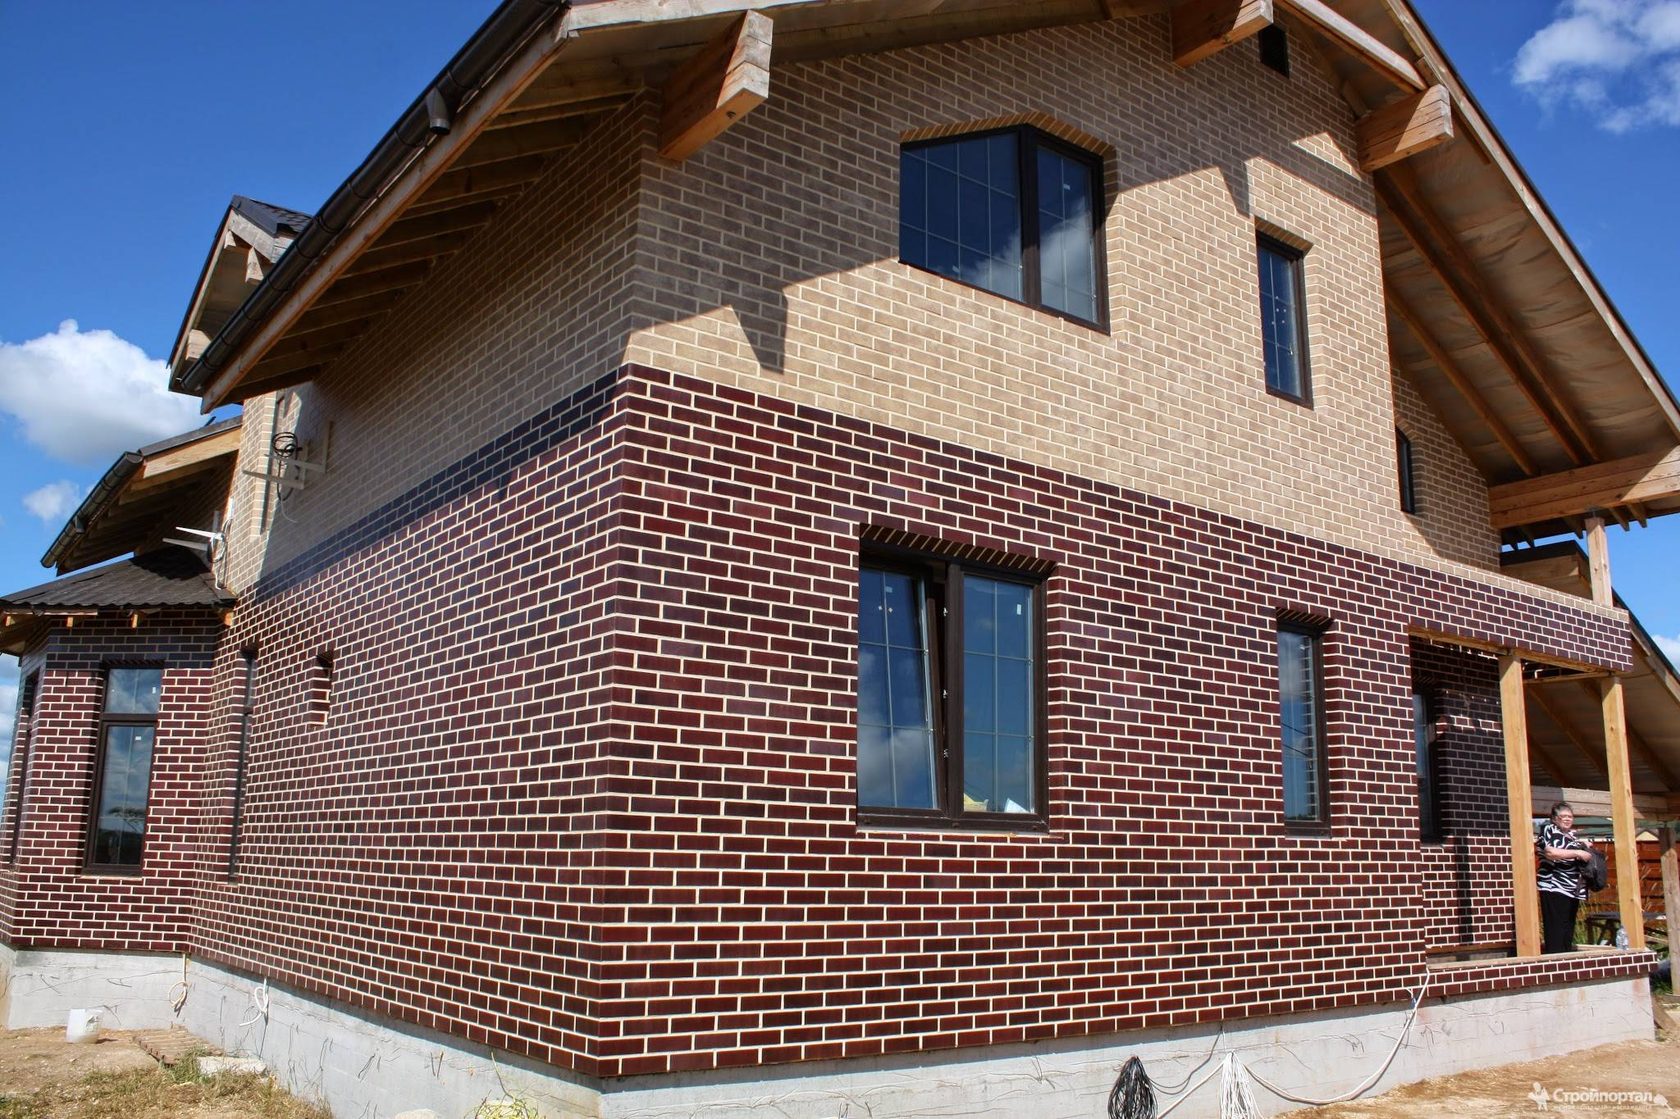 Фасадные панели (112 фото): стеновые и облицовочные элементы для наружной отделки фасада дома, монтаж